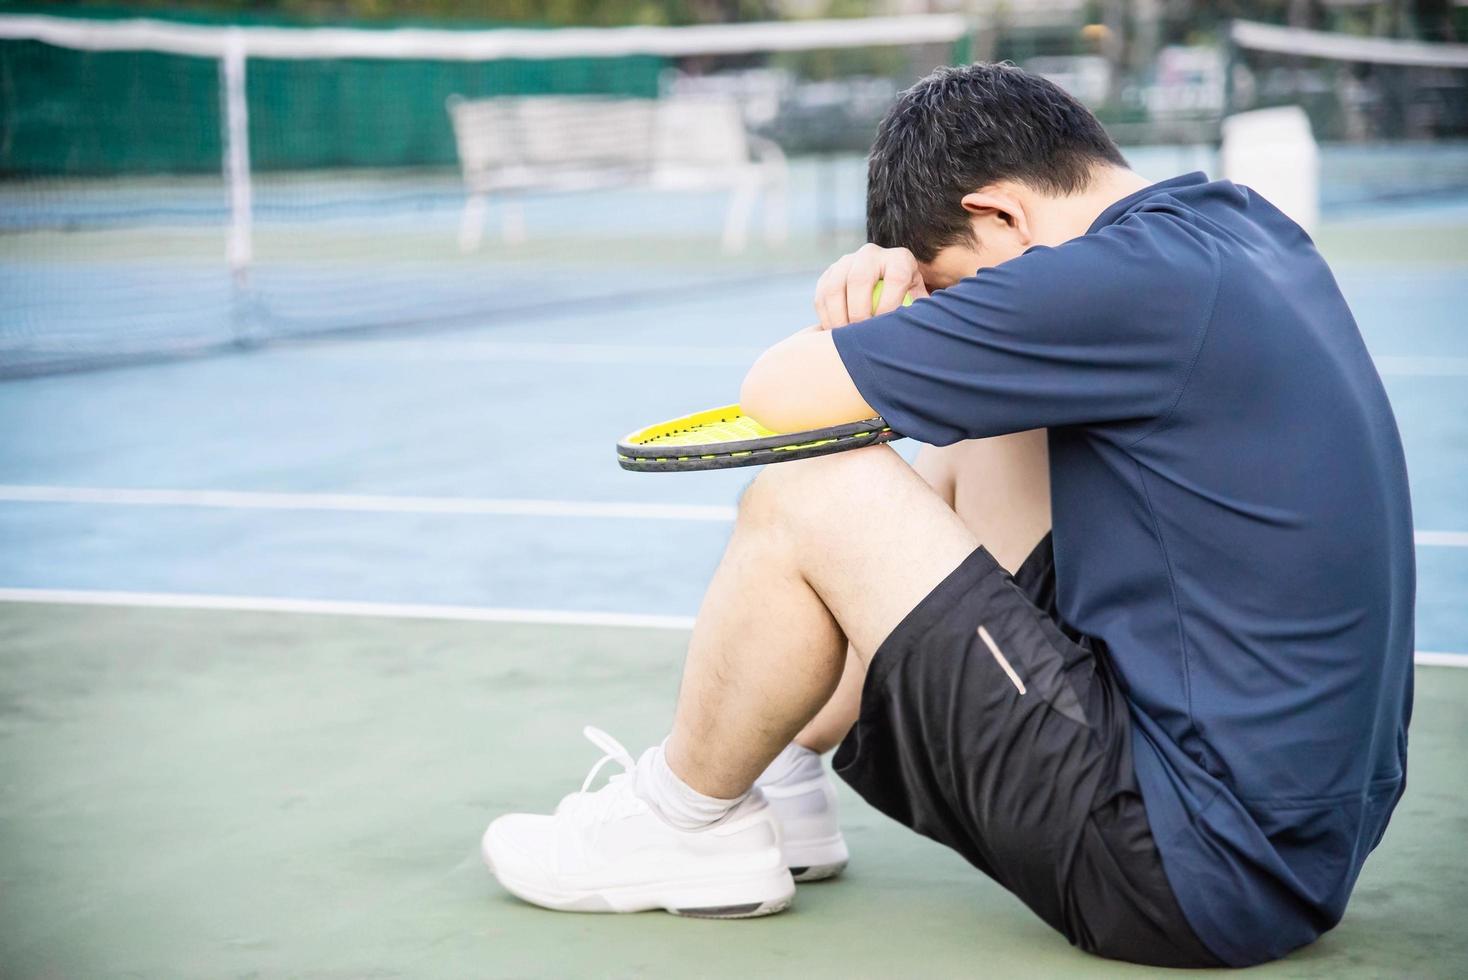 tenista triste sentado en la cancha después de perder un partido - gente en el concepto de juego de tenis deportivo foto